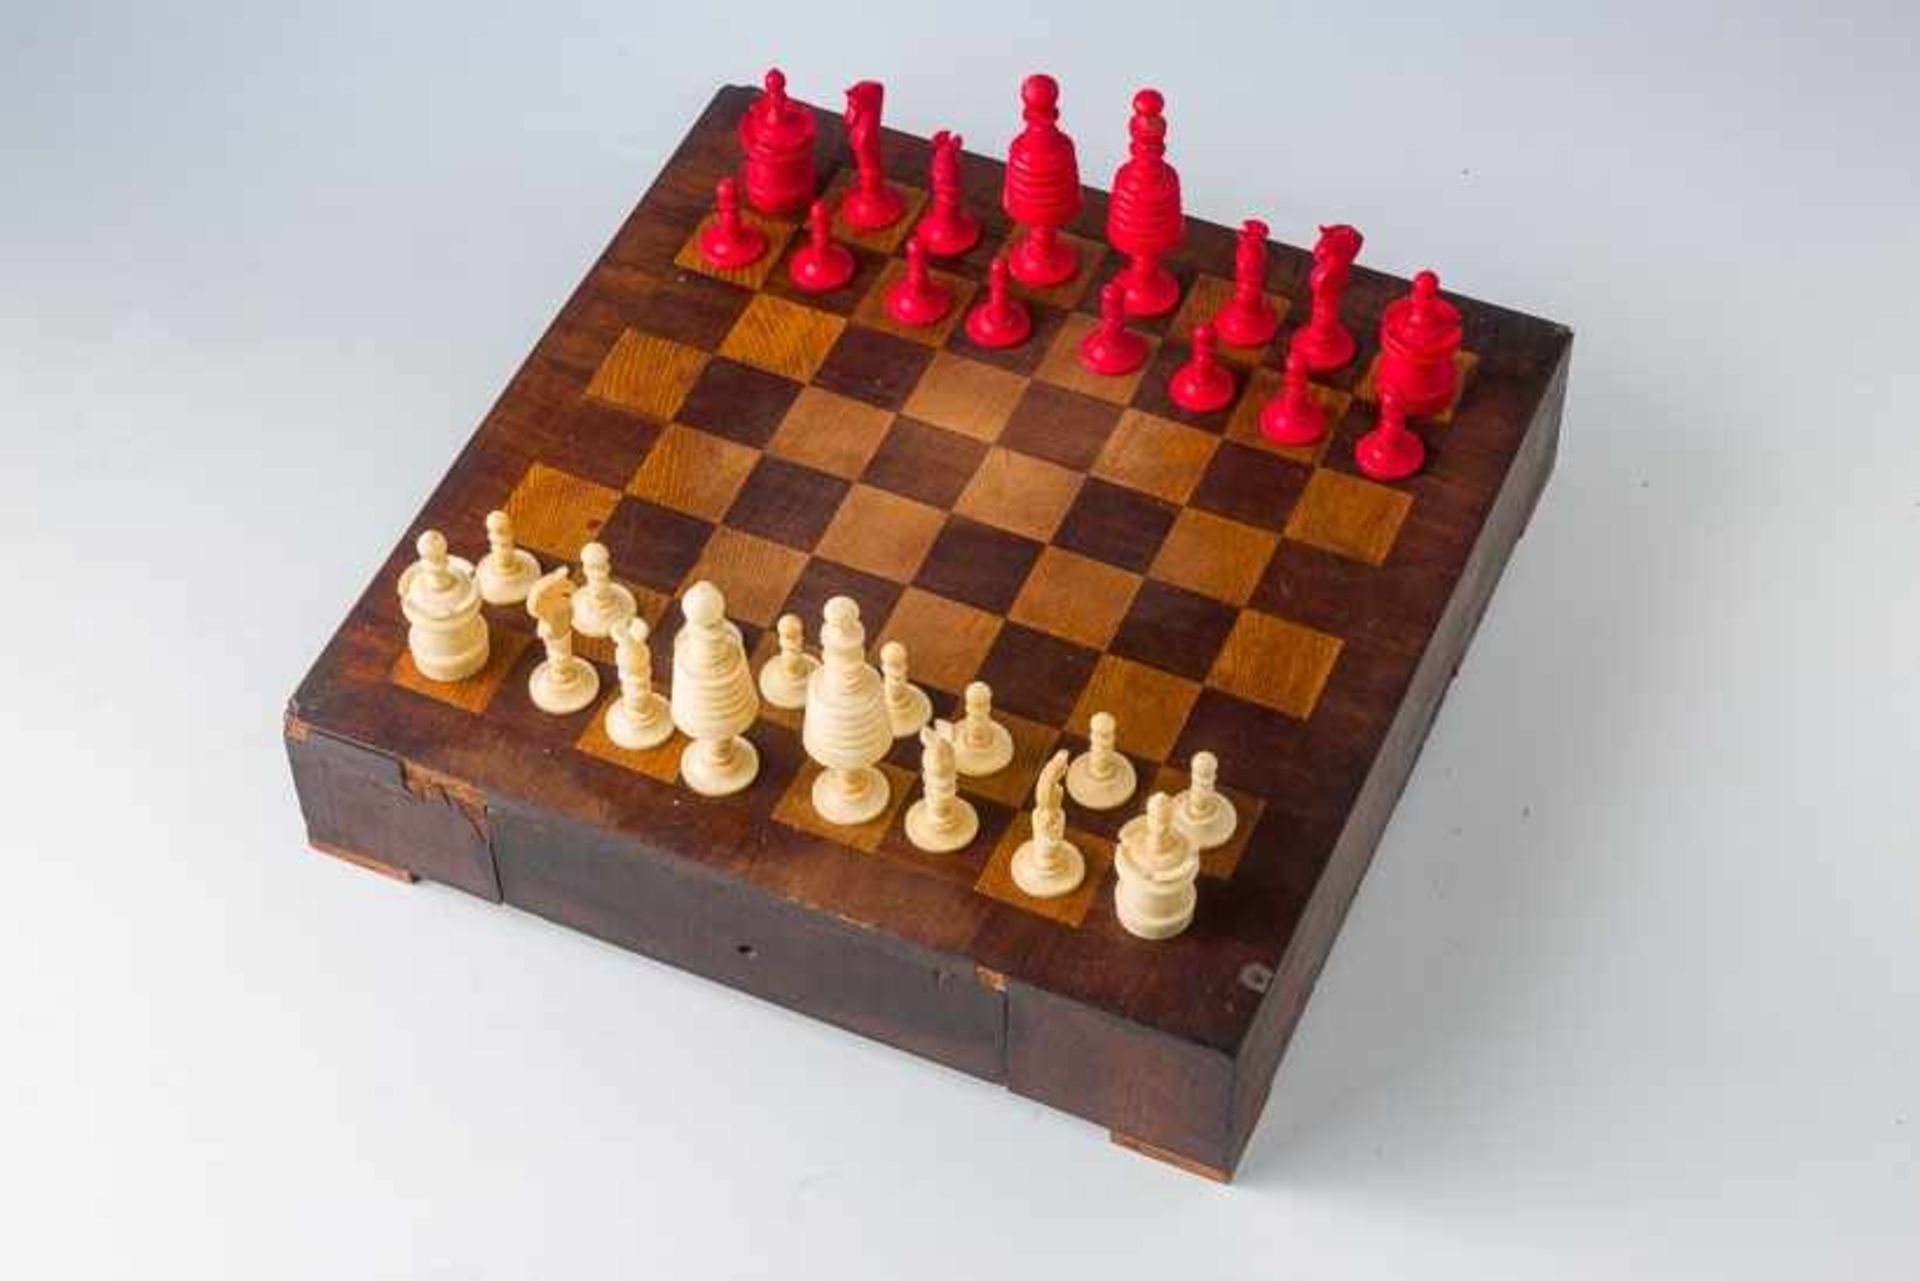 Schachspiel mit 32 Beinfiguren,gedrechselt, teils rot eingefärbt. H. 3 bis 9 cm. England, 2. H.